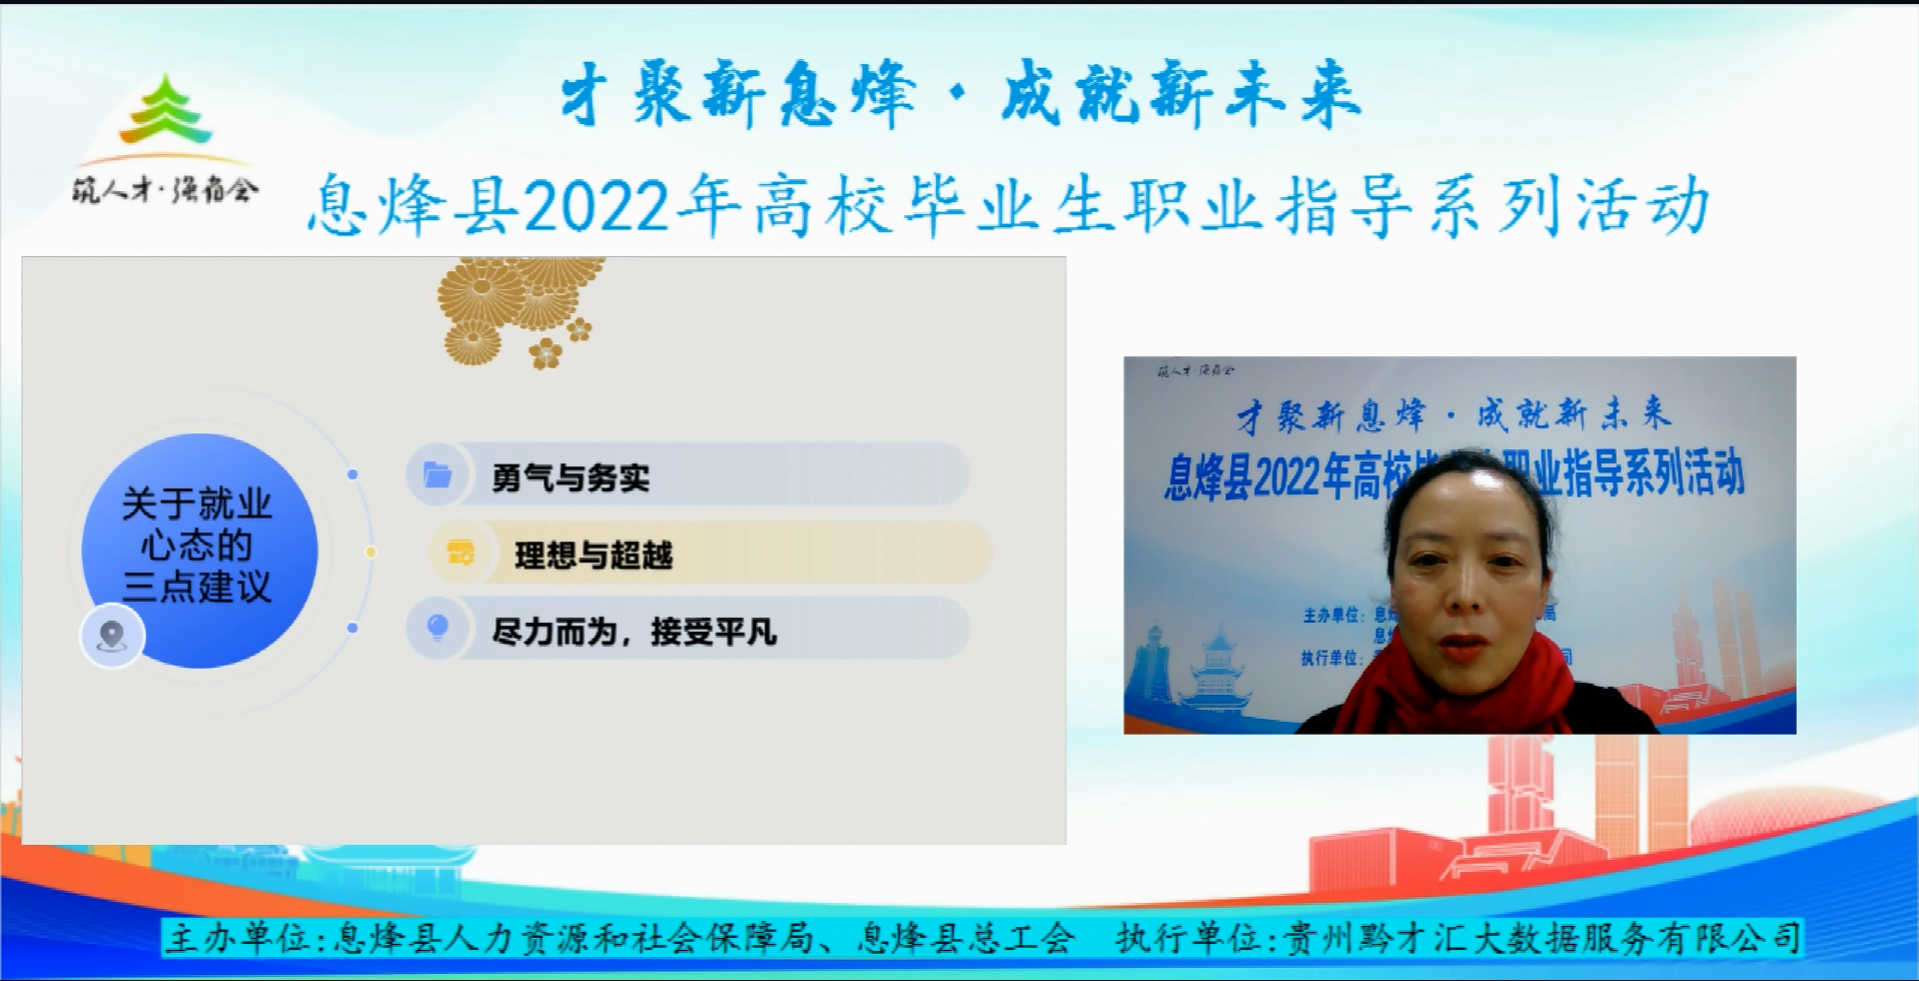 息烽县2022年高校毕业生职业指导活动圆满结束